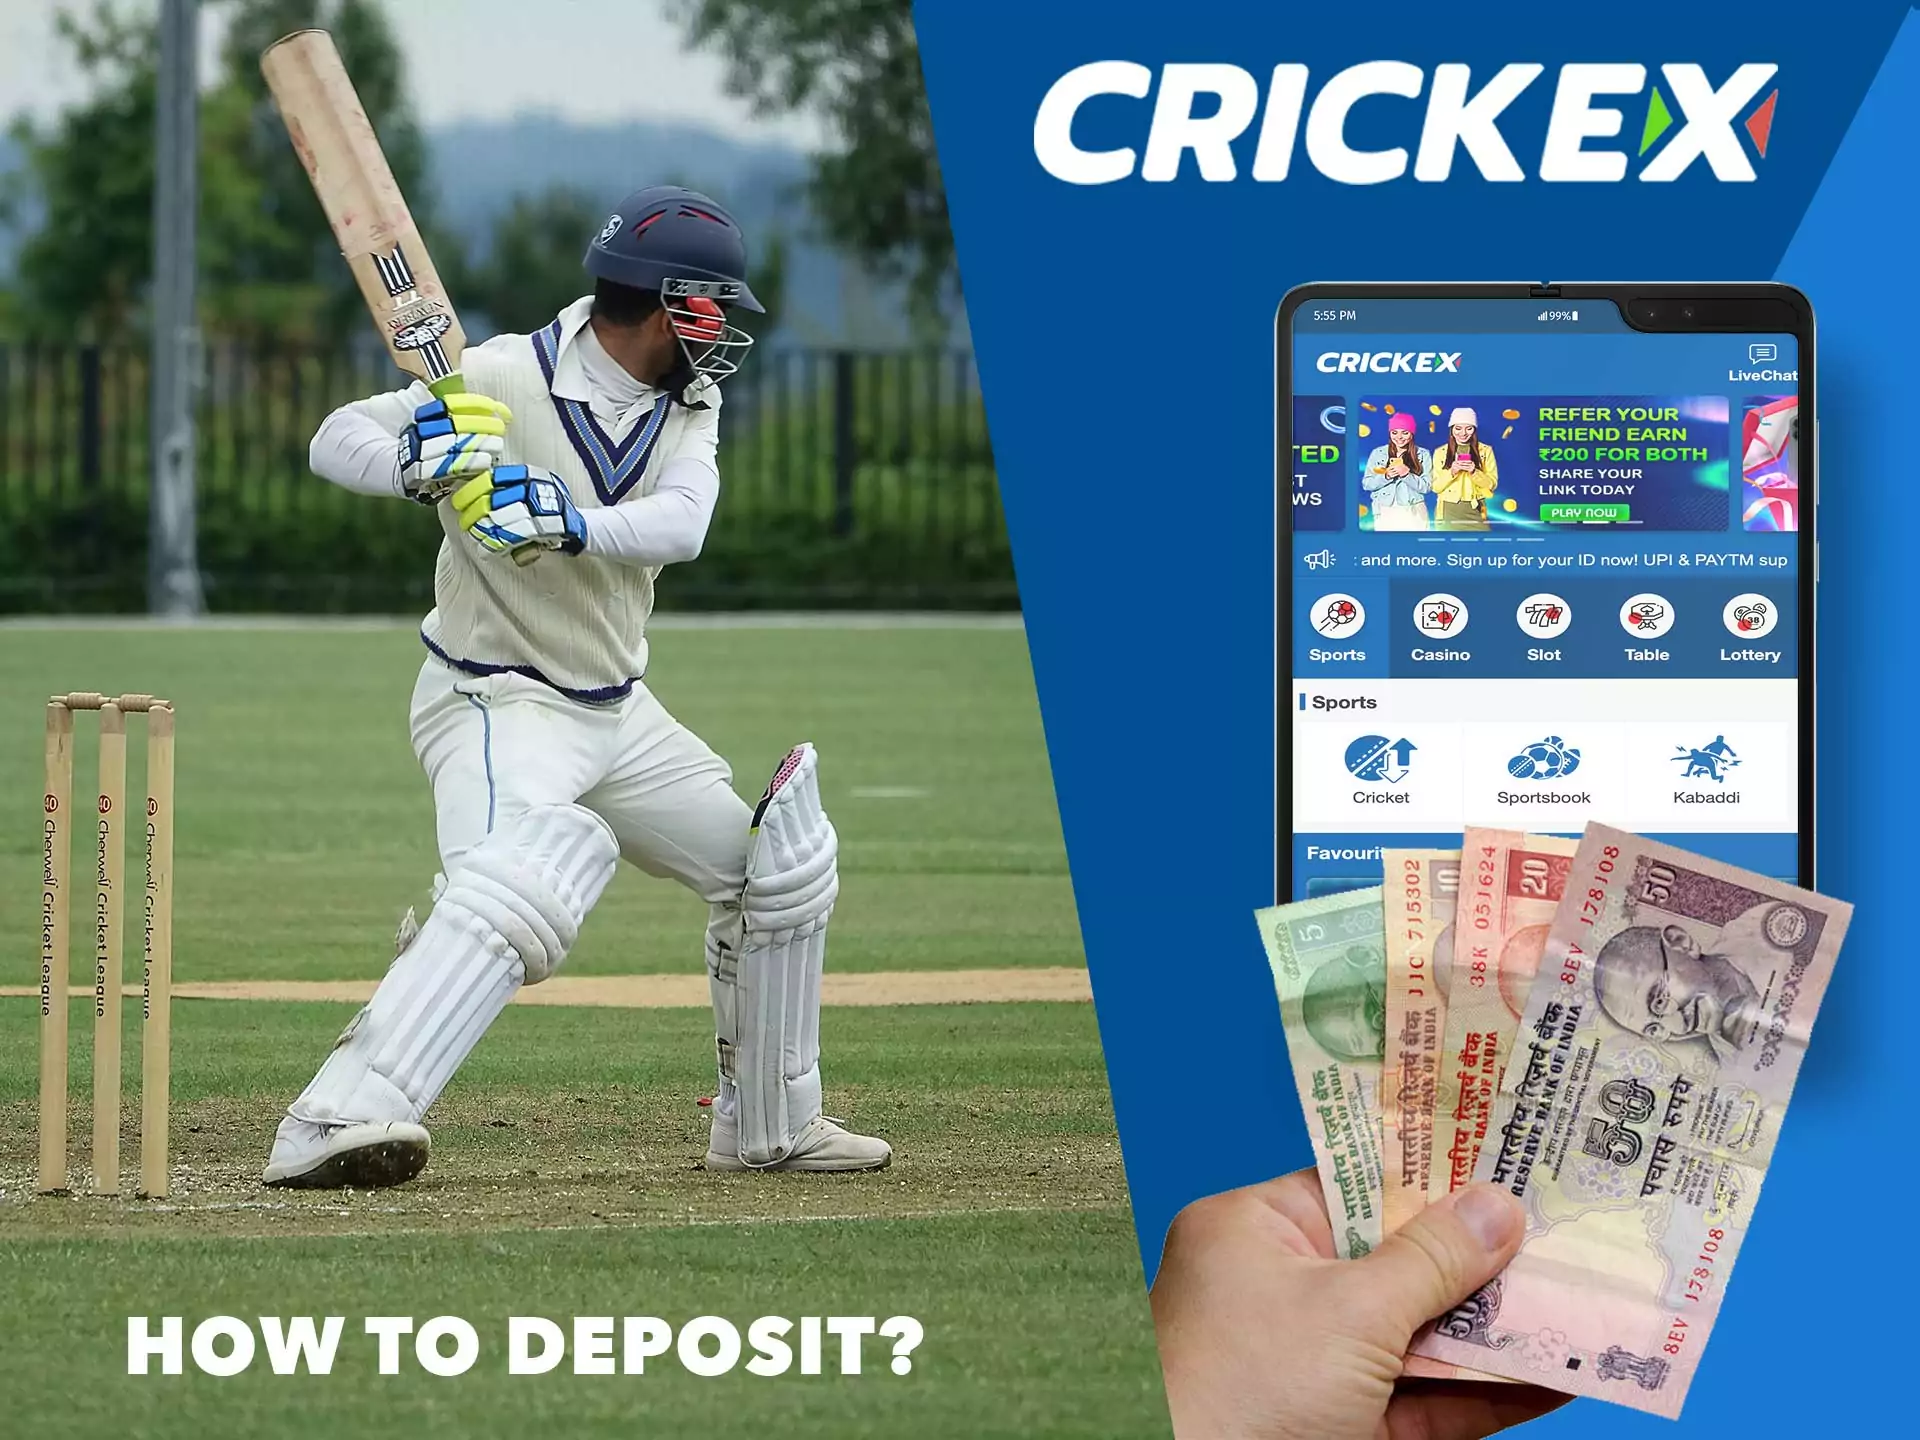 Crickex में न्यूनतम जमा राशि 200 रुपये है।